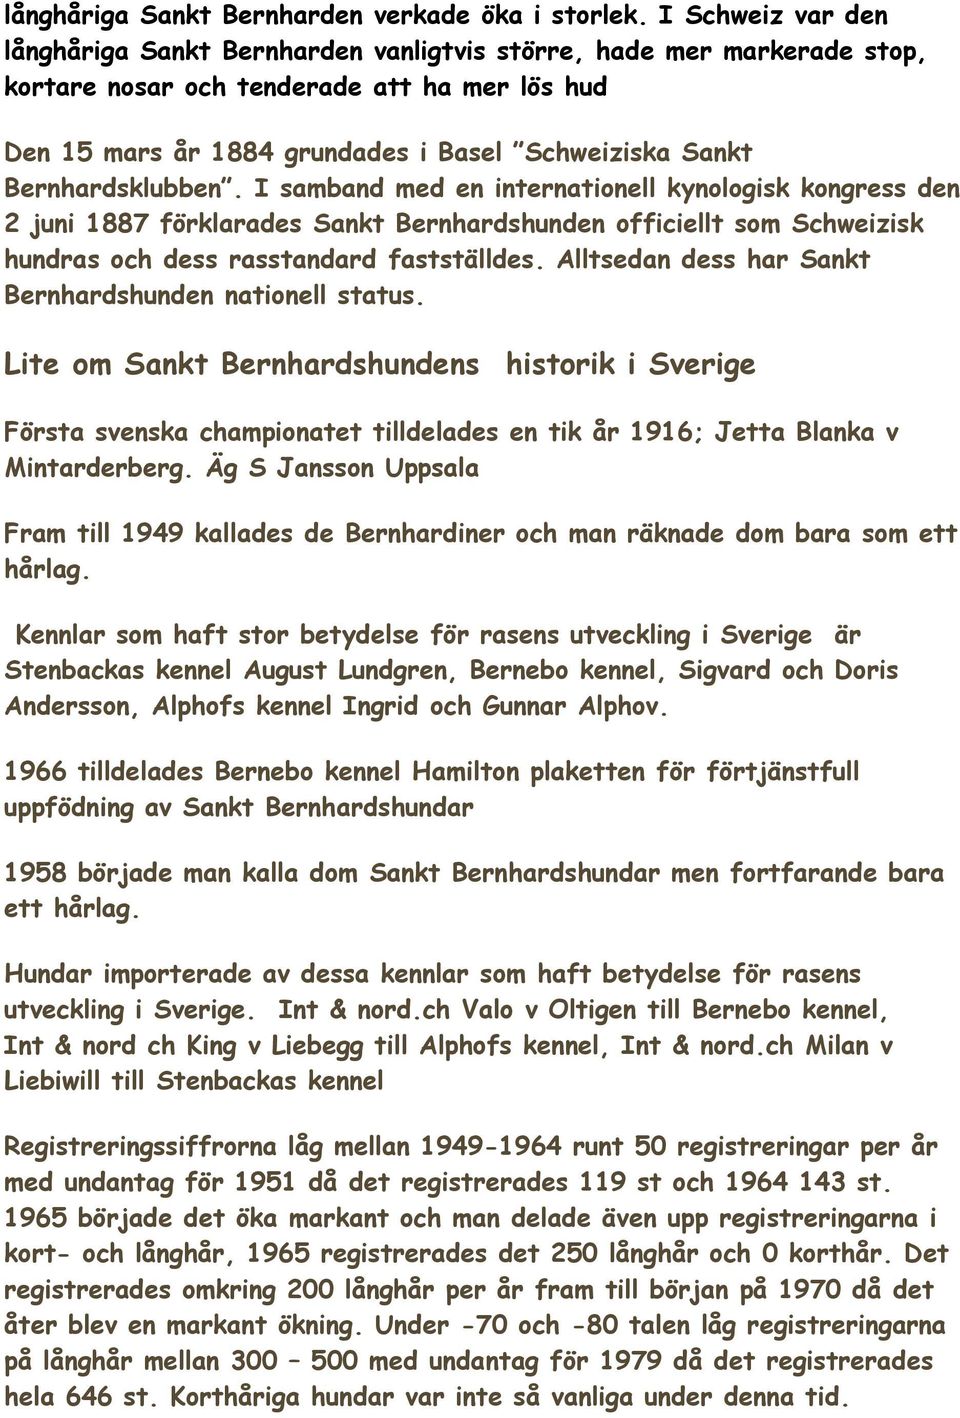 Bernhardsklubben. I samband med en internationell kynologisk kongress den 2 juni 1887 förklarades Sankt Bernhardshunden officiellt som Schweizisk hundras och dess rasstandard fastställdes.